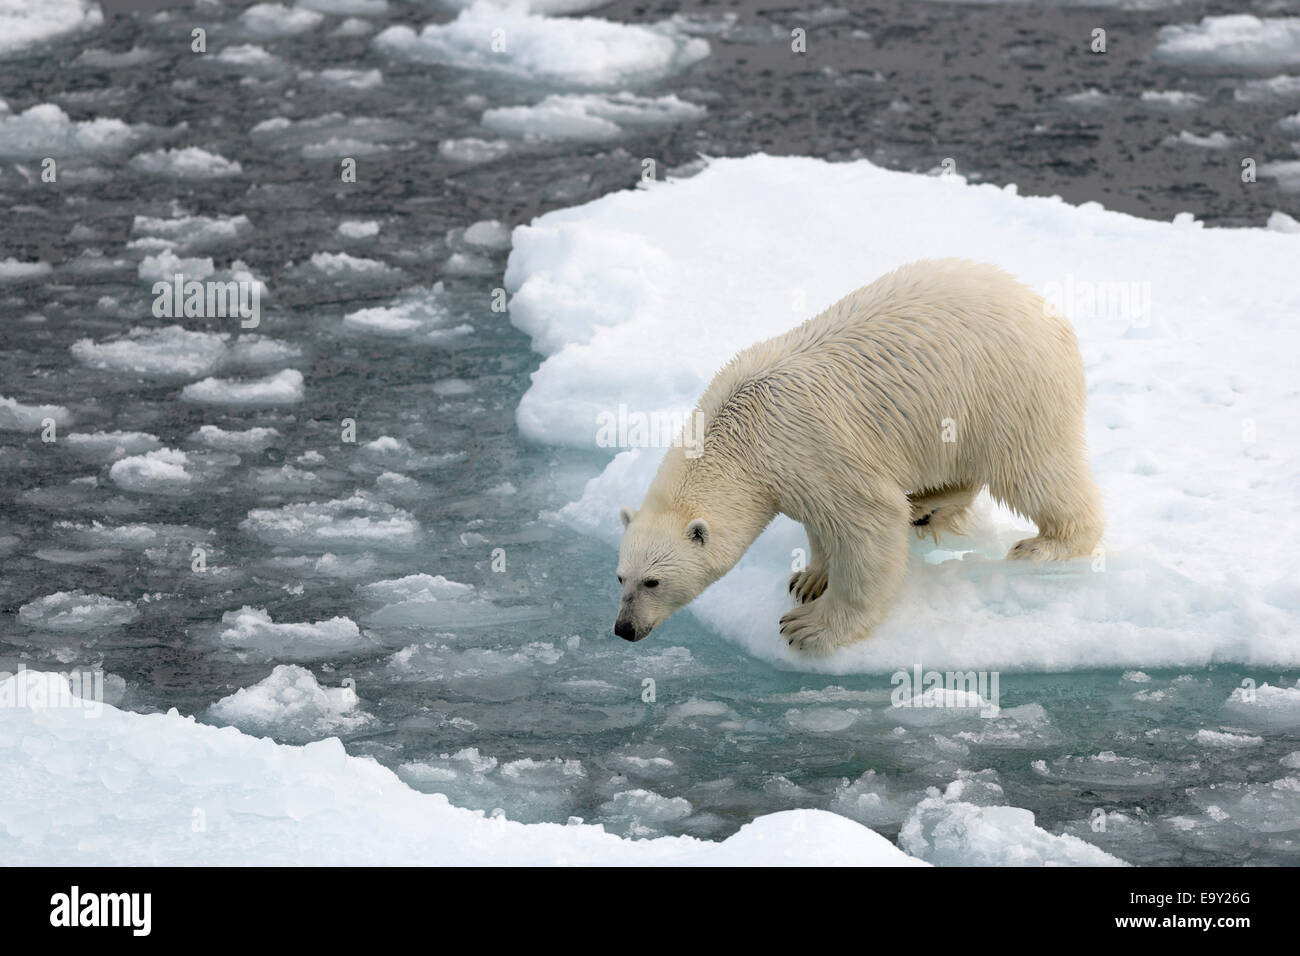 El oso polar (Ursus maritimus) de pie sobre el hielo, la isla de Spitsbergen, el archipiélago de Svalbard y Jan Mayen, Svalbard, Noruega Foto de stock